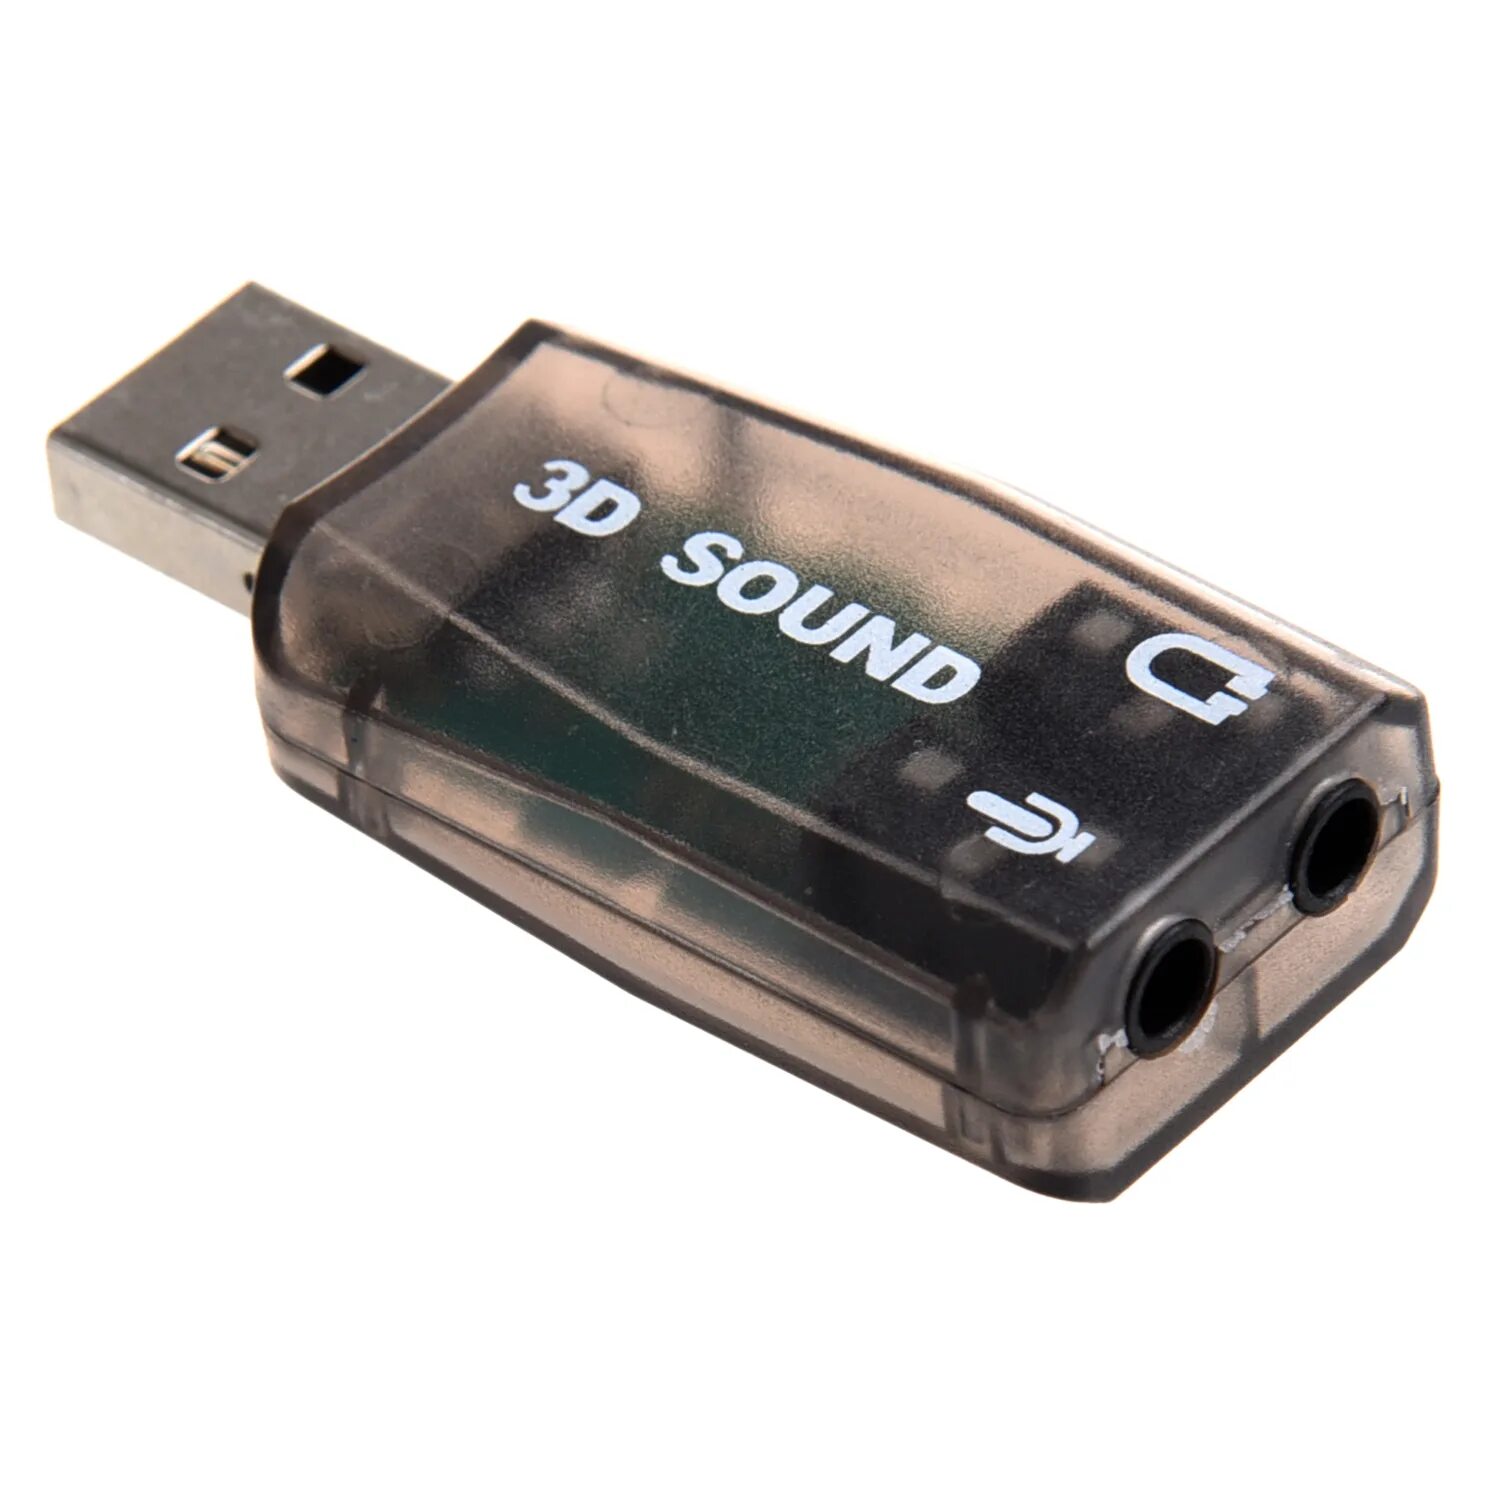 Звуковая карта внешняя для микрофона. USB 3d Sound Card (c-Media cm108). Адаптер USB звуковая карта 3d Sound. Звуковая карта "USB trua3d". Внешняя звуковая карта DEXP 3d.